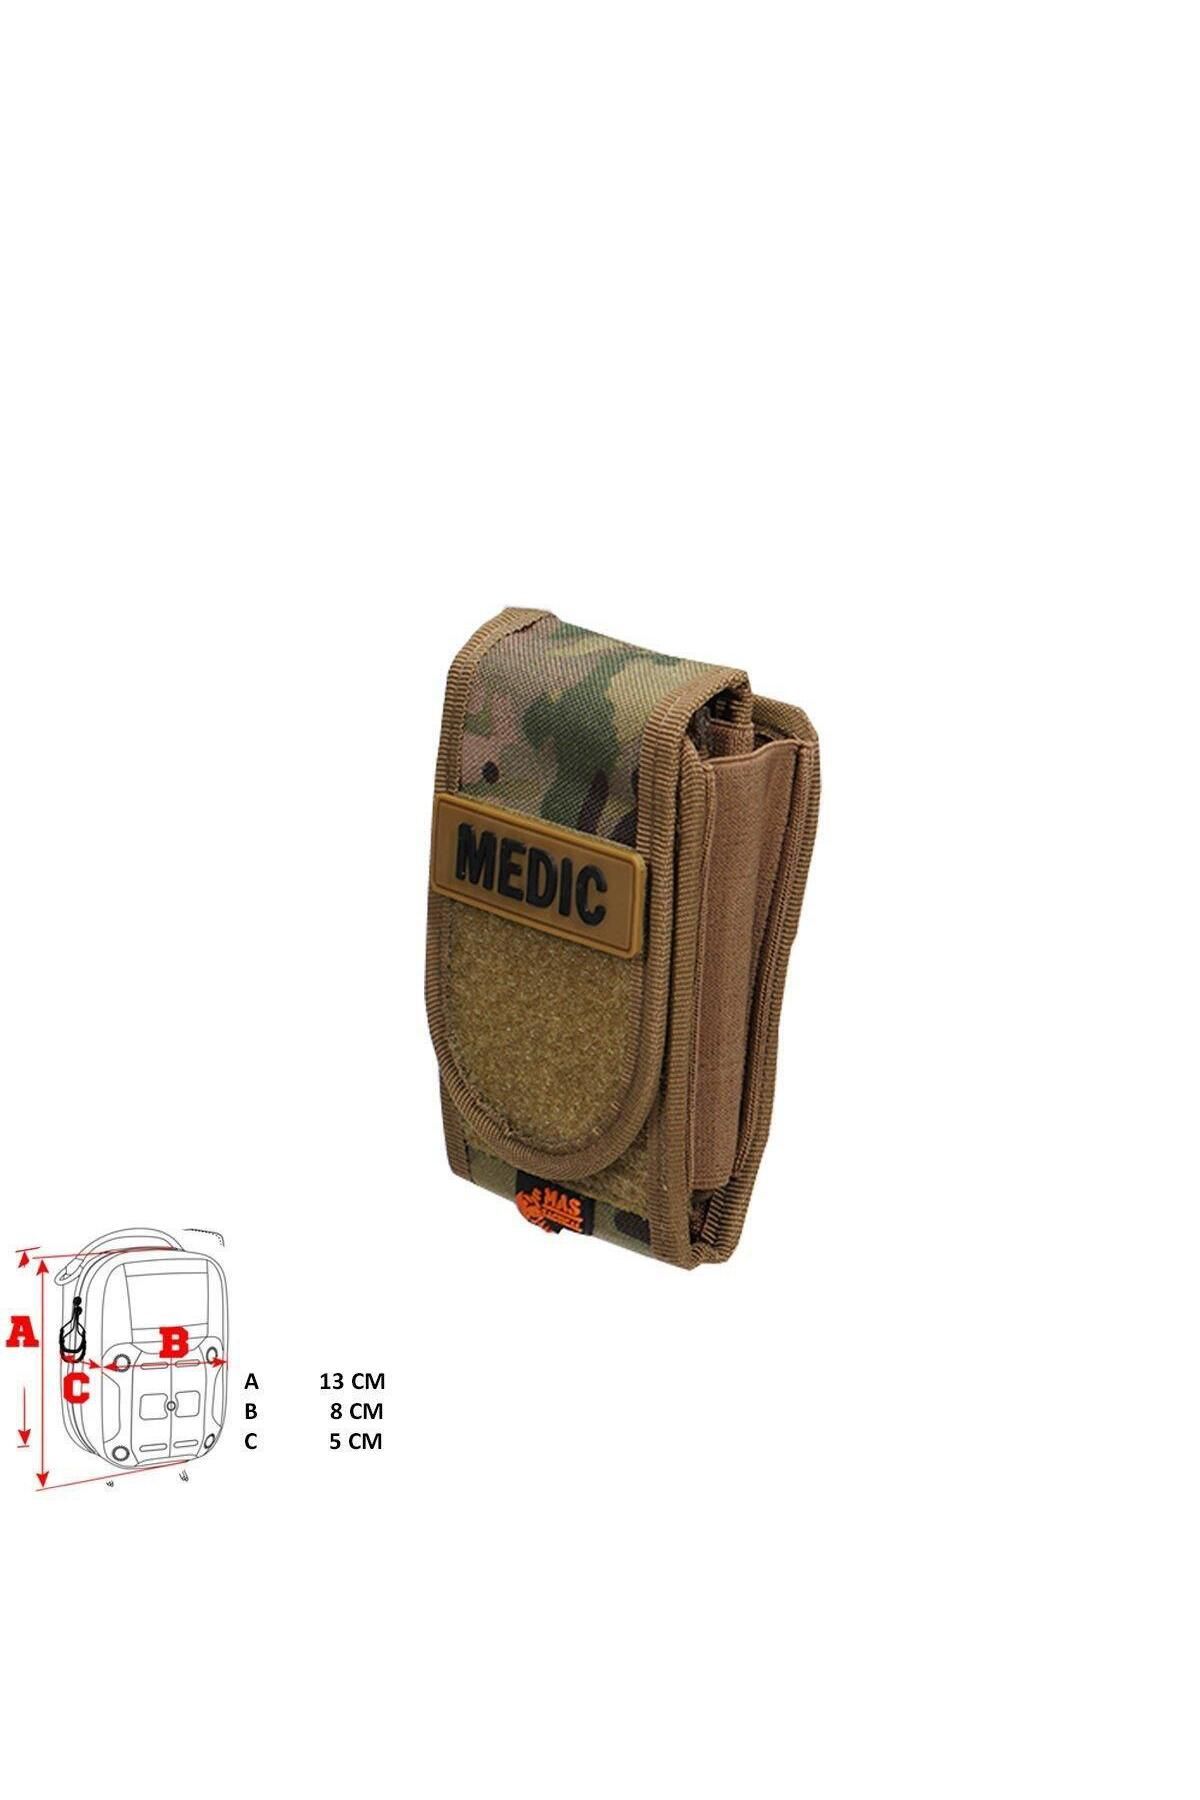 Mastactical Askeri Sağlık Çantası Mini Tip (Multicam)